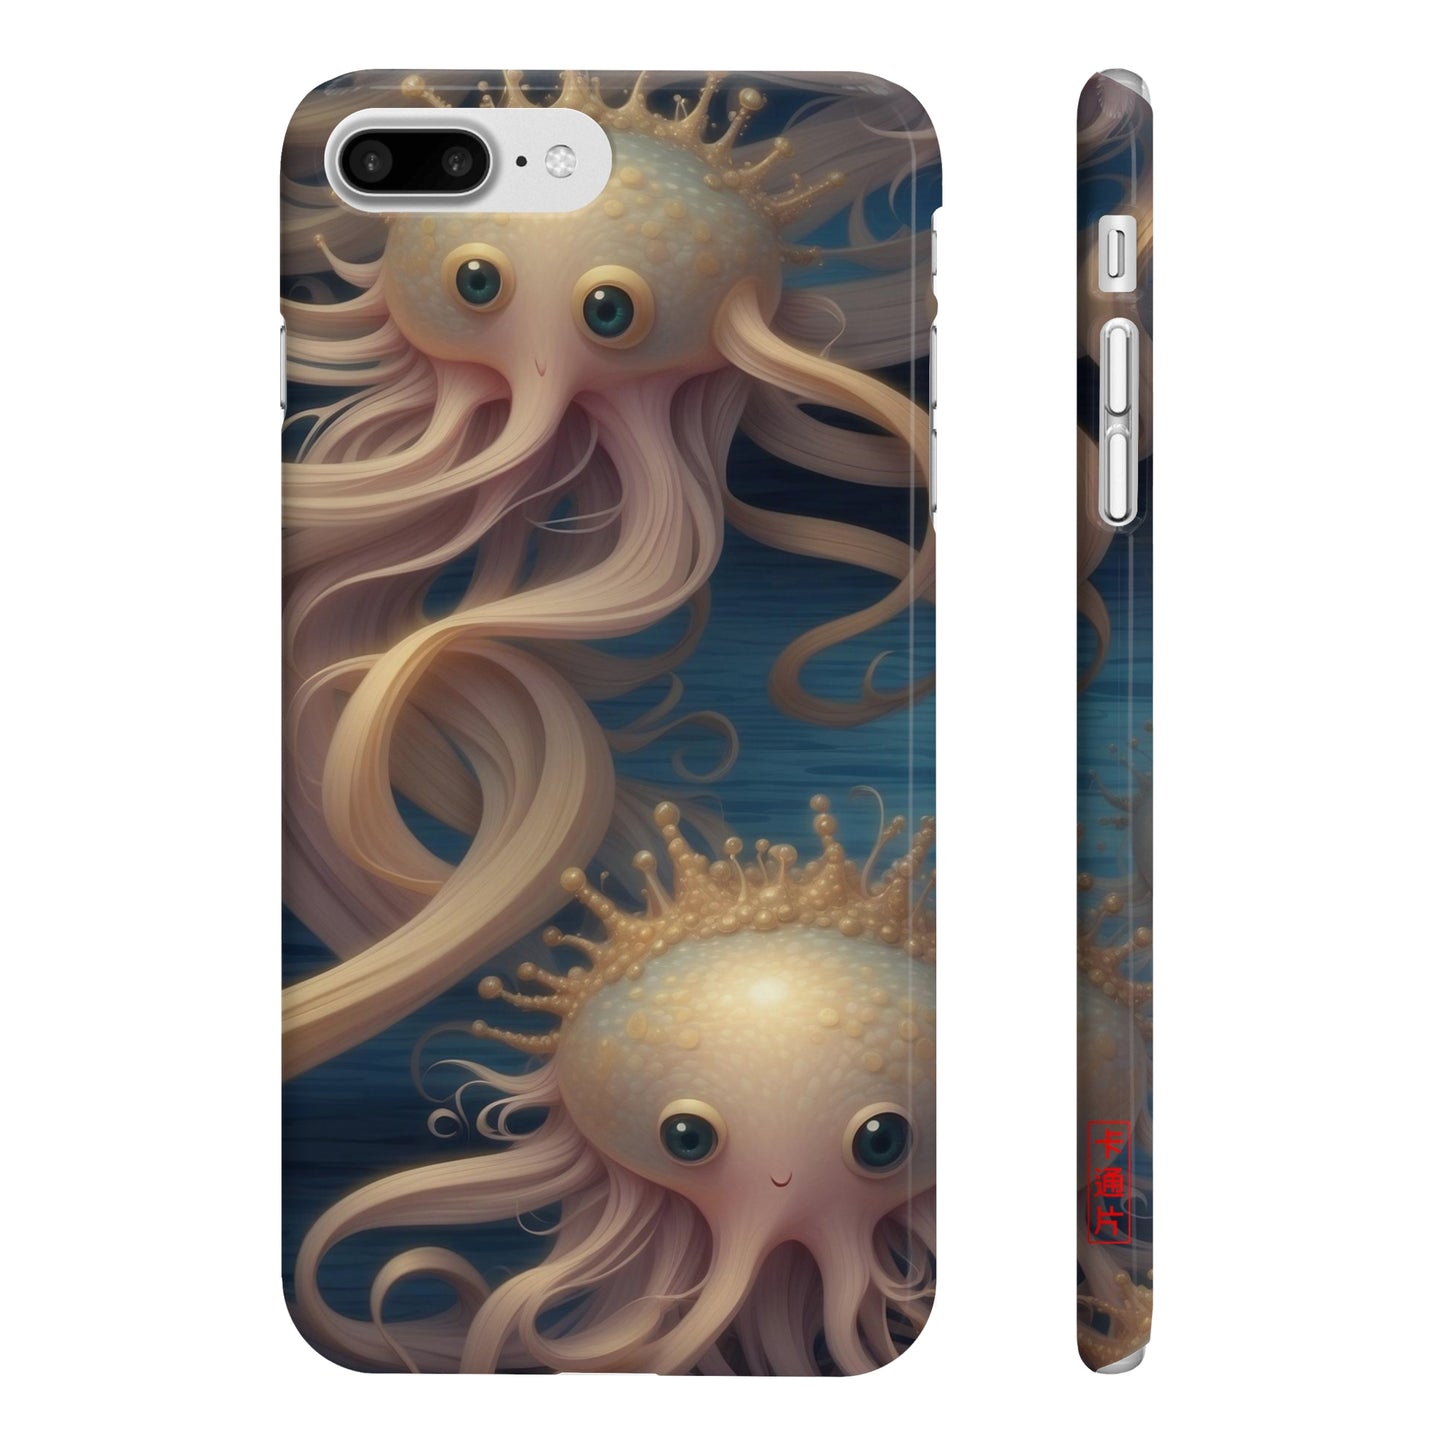 Kǎtōng Piàn - Mermaid Collection - 009 - Slim Phone Cases Printify